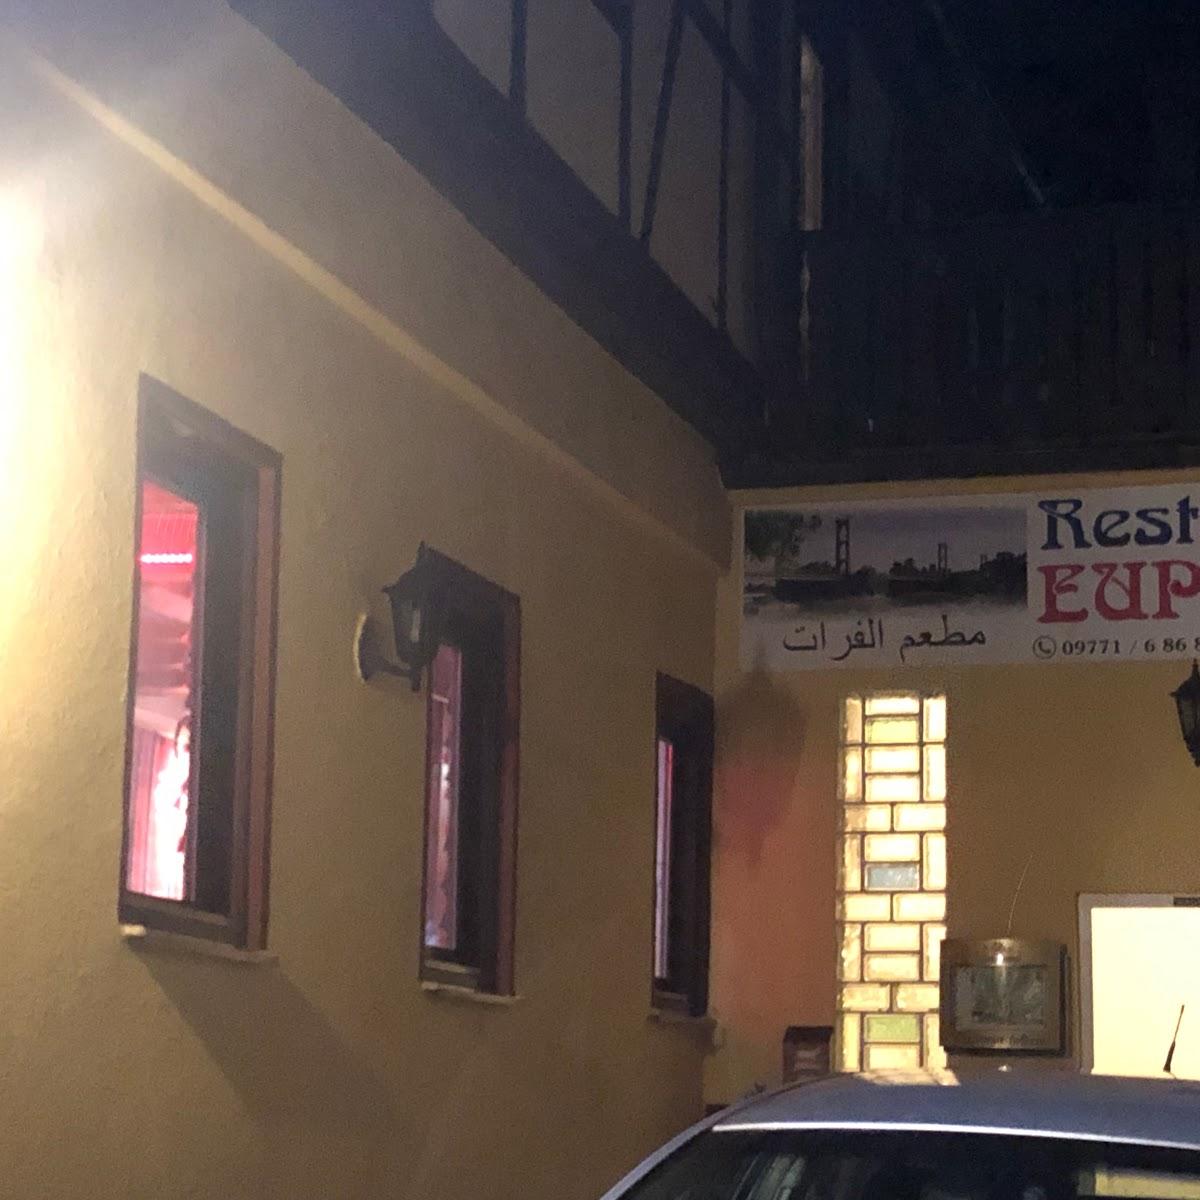 Restaurant "Restaurant Euphrat" in Bad Neustadt an der Saale